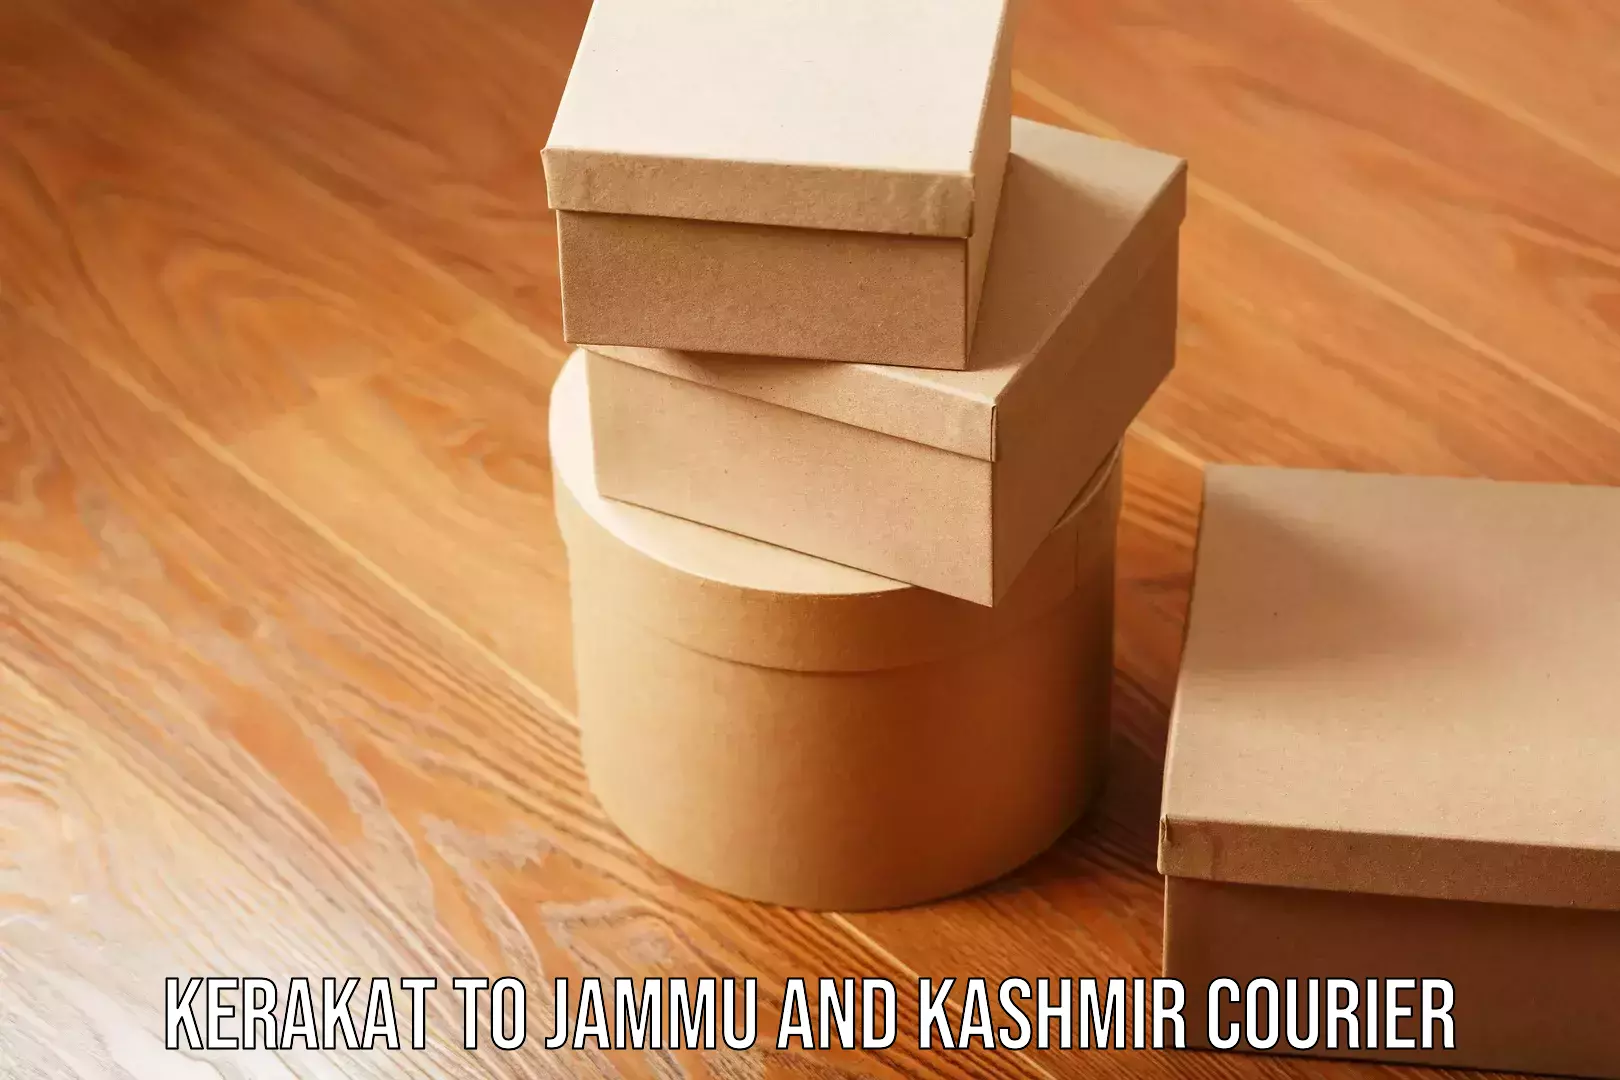 Expert home movers Kerakat to Jammu and Kashmir